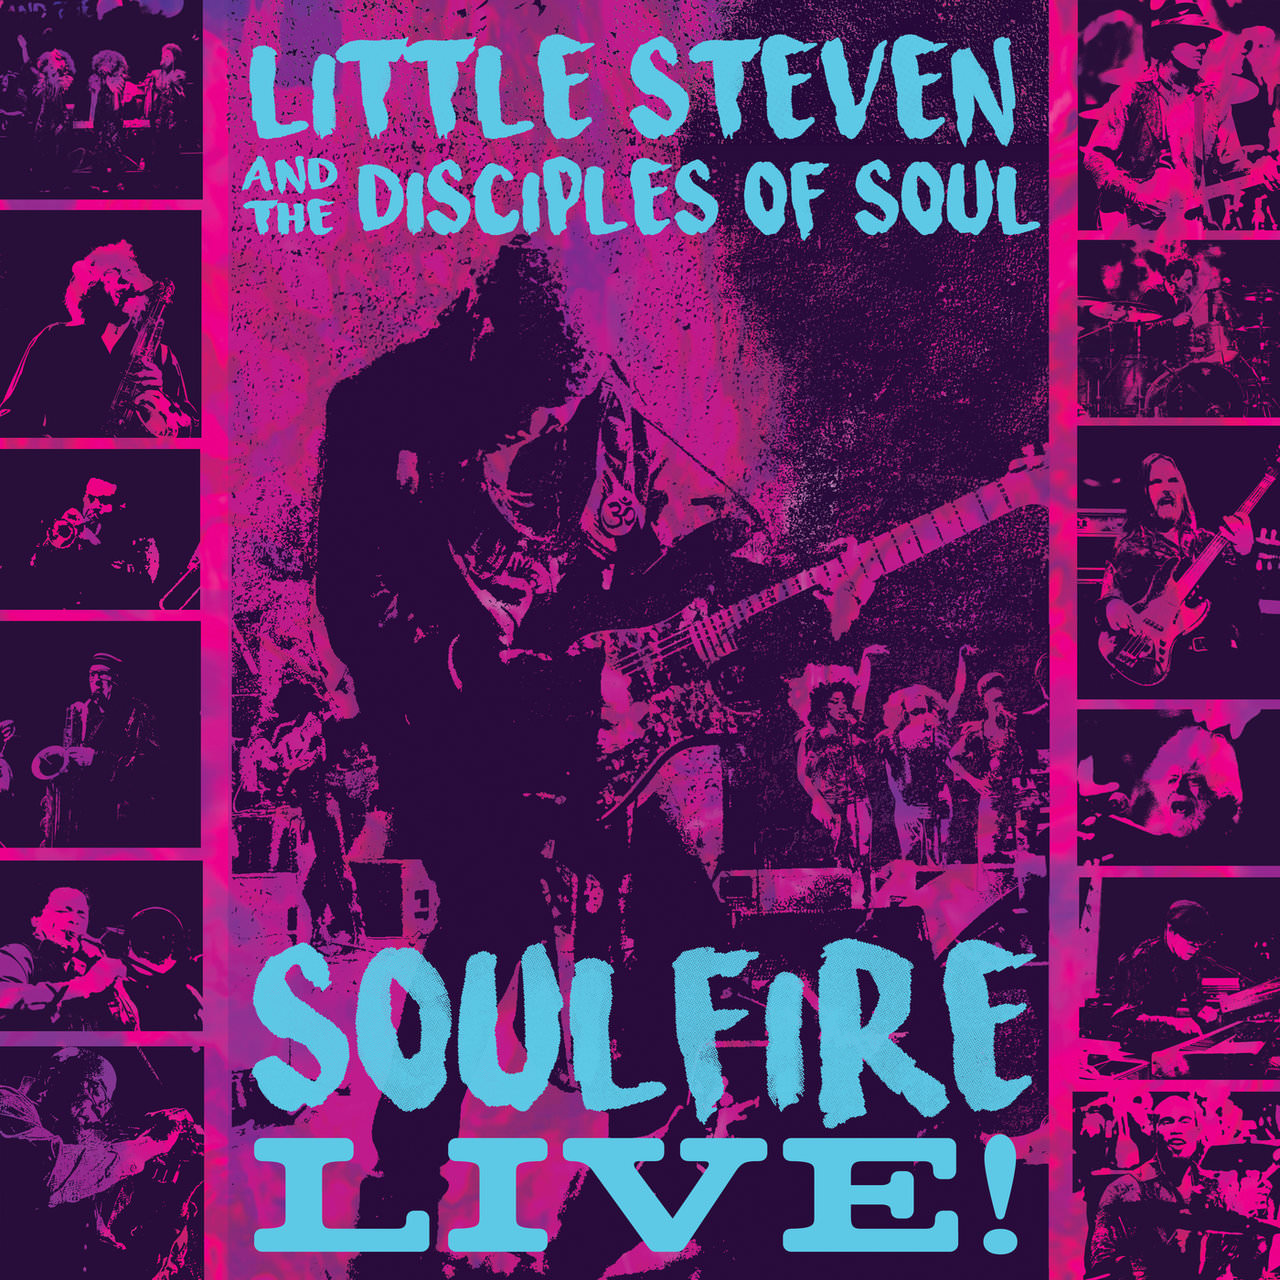 Little Steven & The Disciples of Soul - Soulfire Live! (2018) [FLAC 24bit/96kHz]